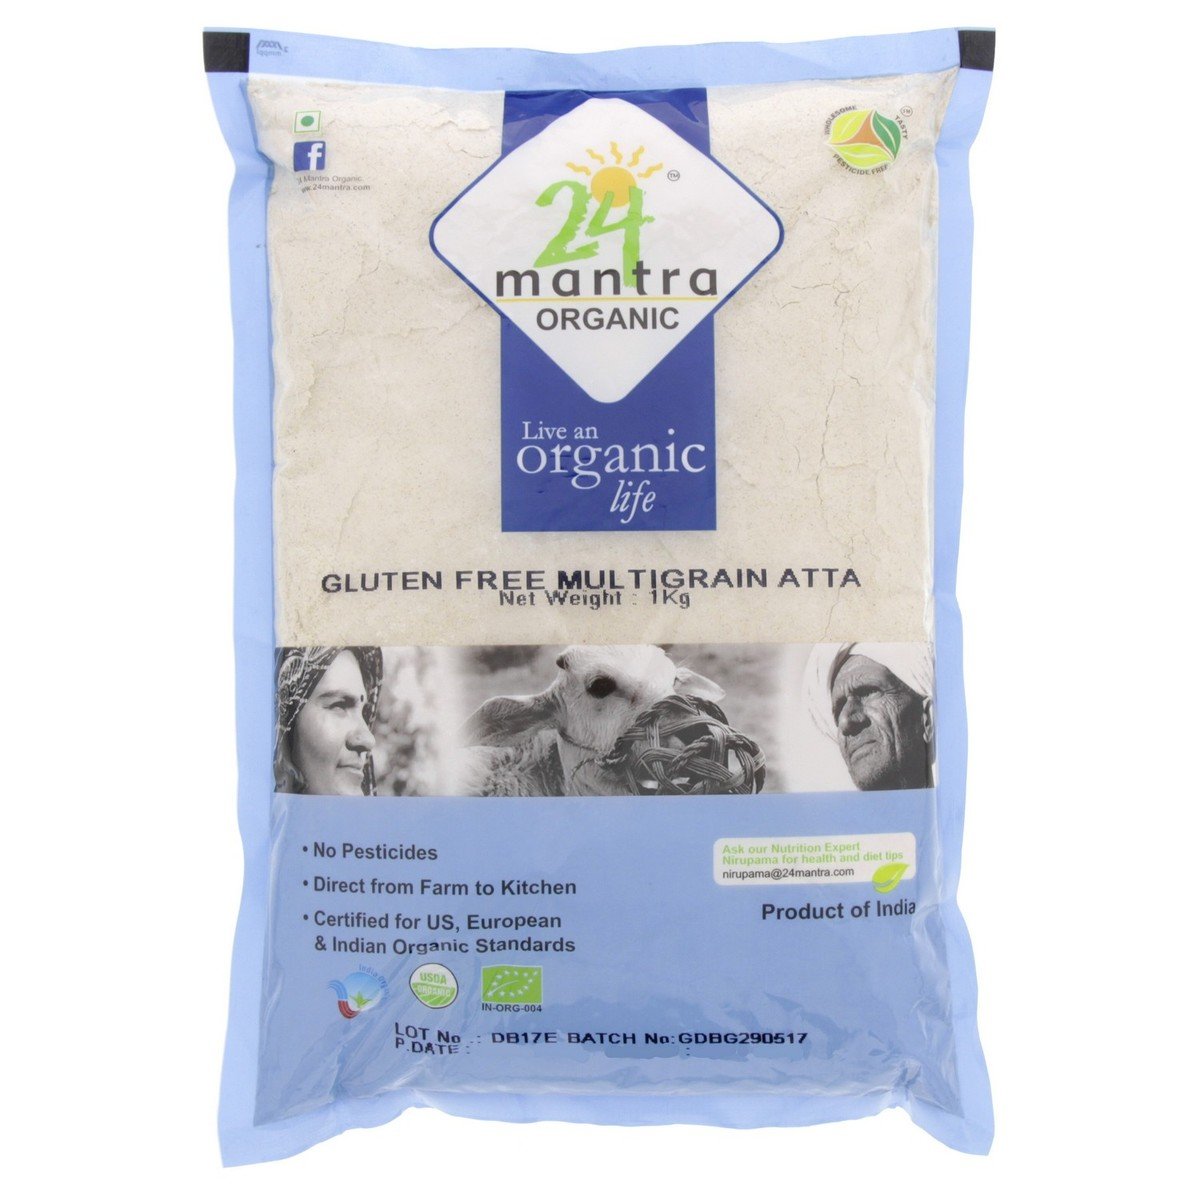 24 Mantra Organic Multi Grain Atta Gluten Free 1 kg